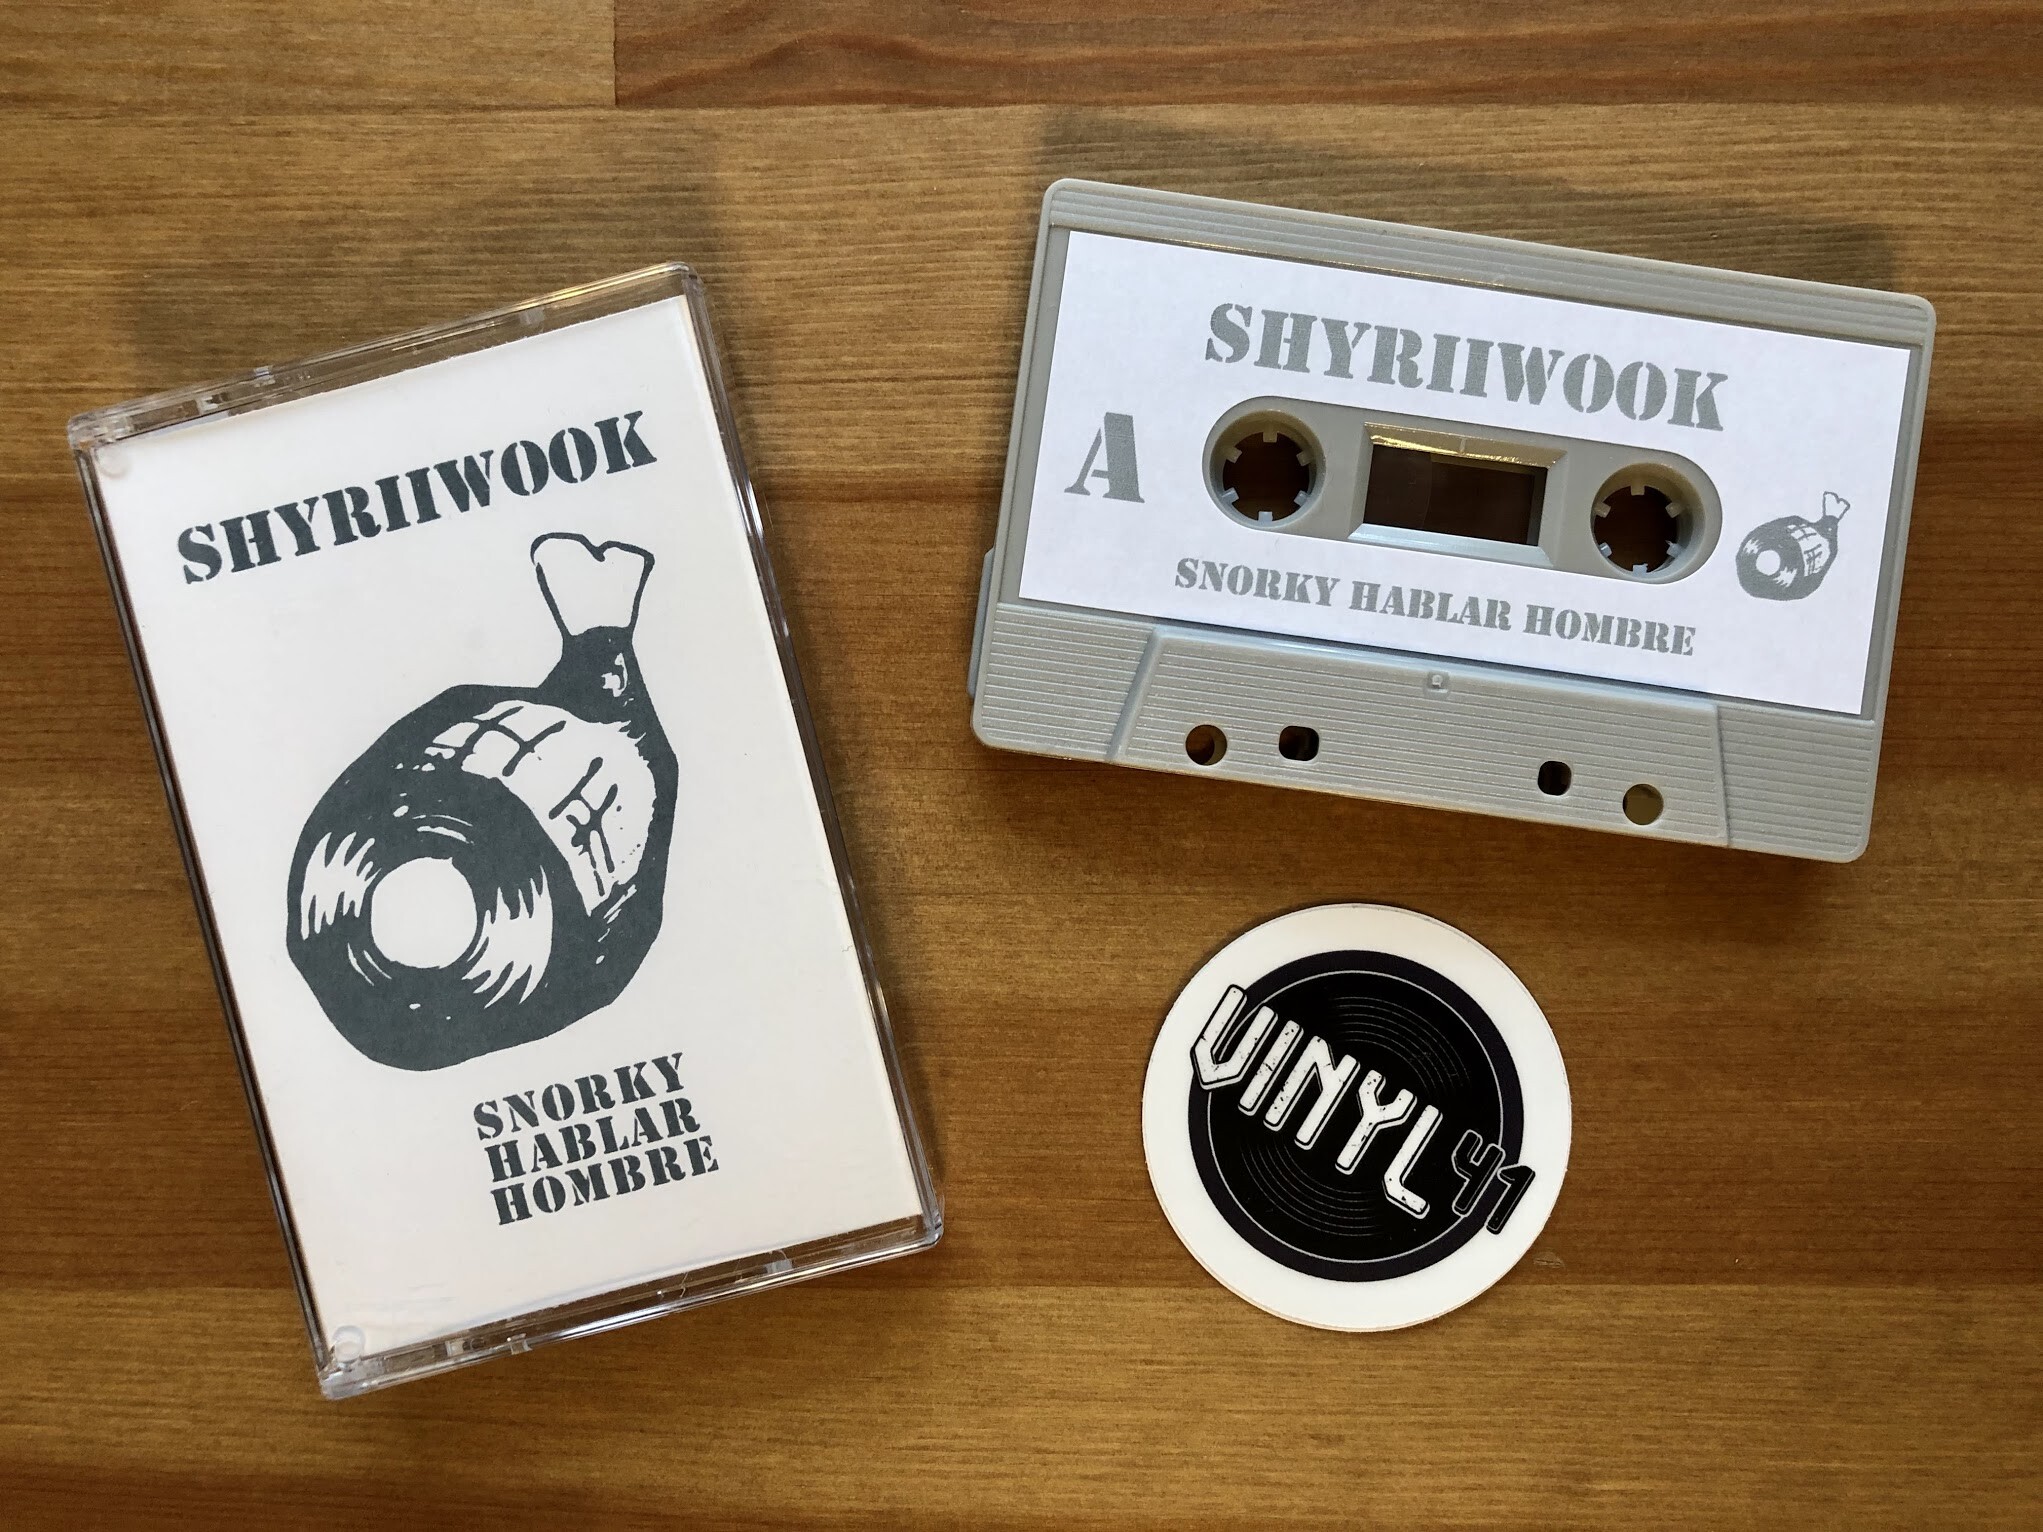 Shyriiwook - Snorky Hablar Hombre